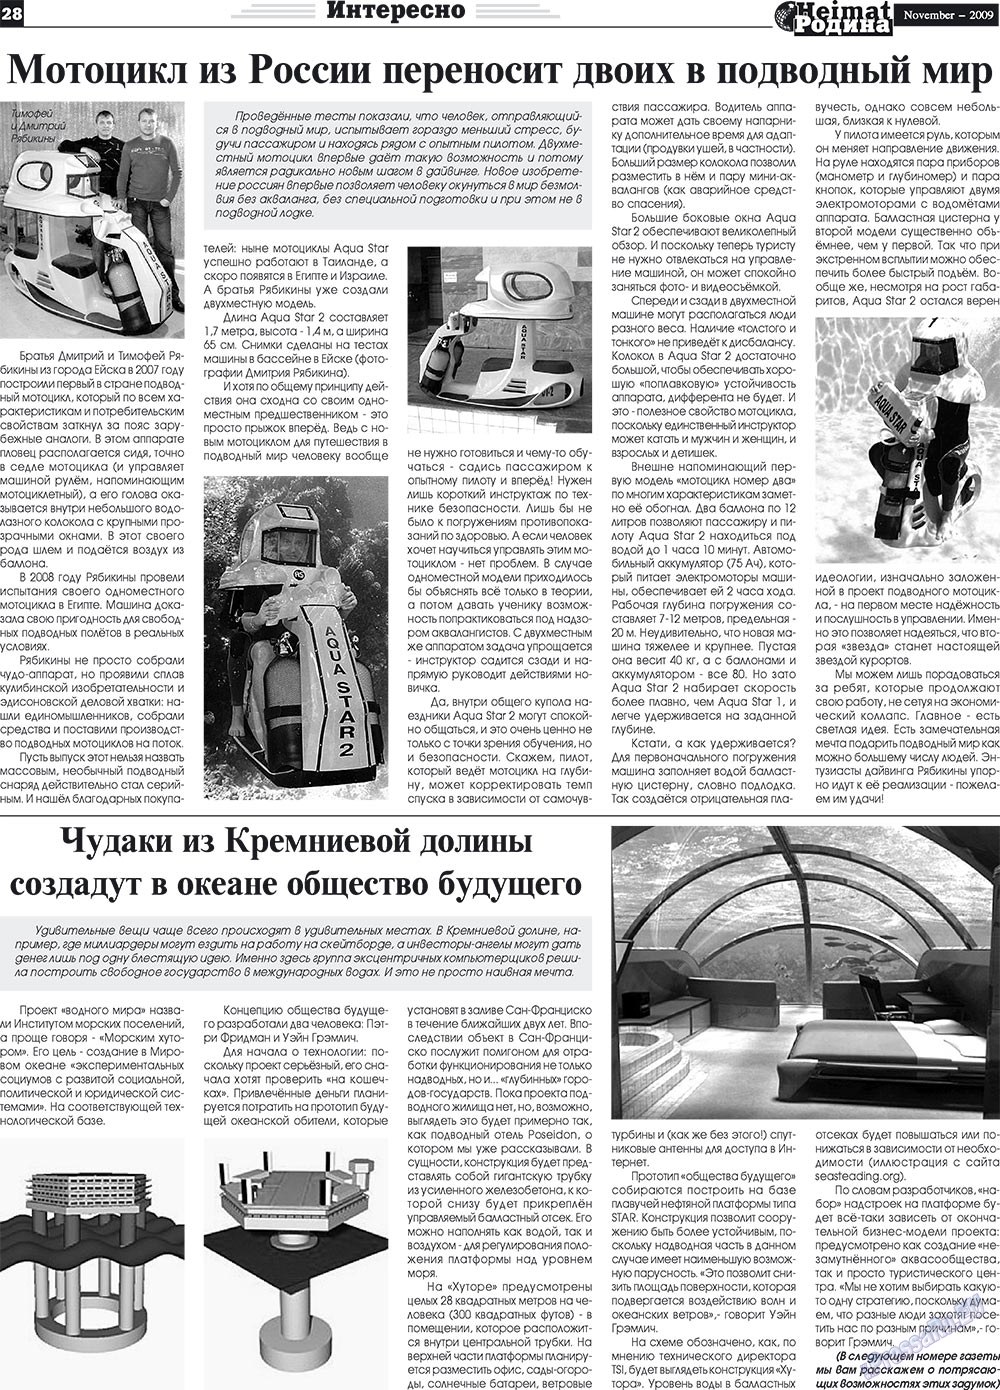 Heimat-Родина (газета). 2009 год, номер 11, стр. 28